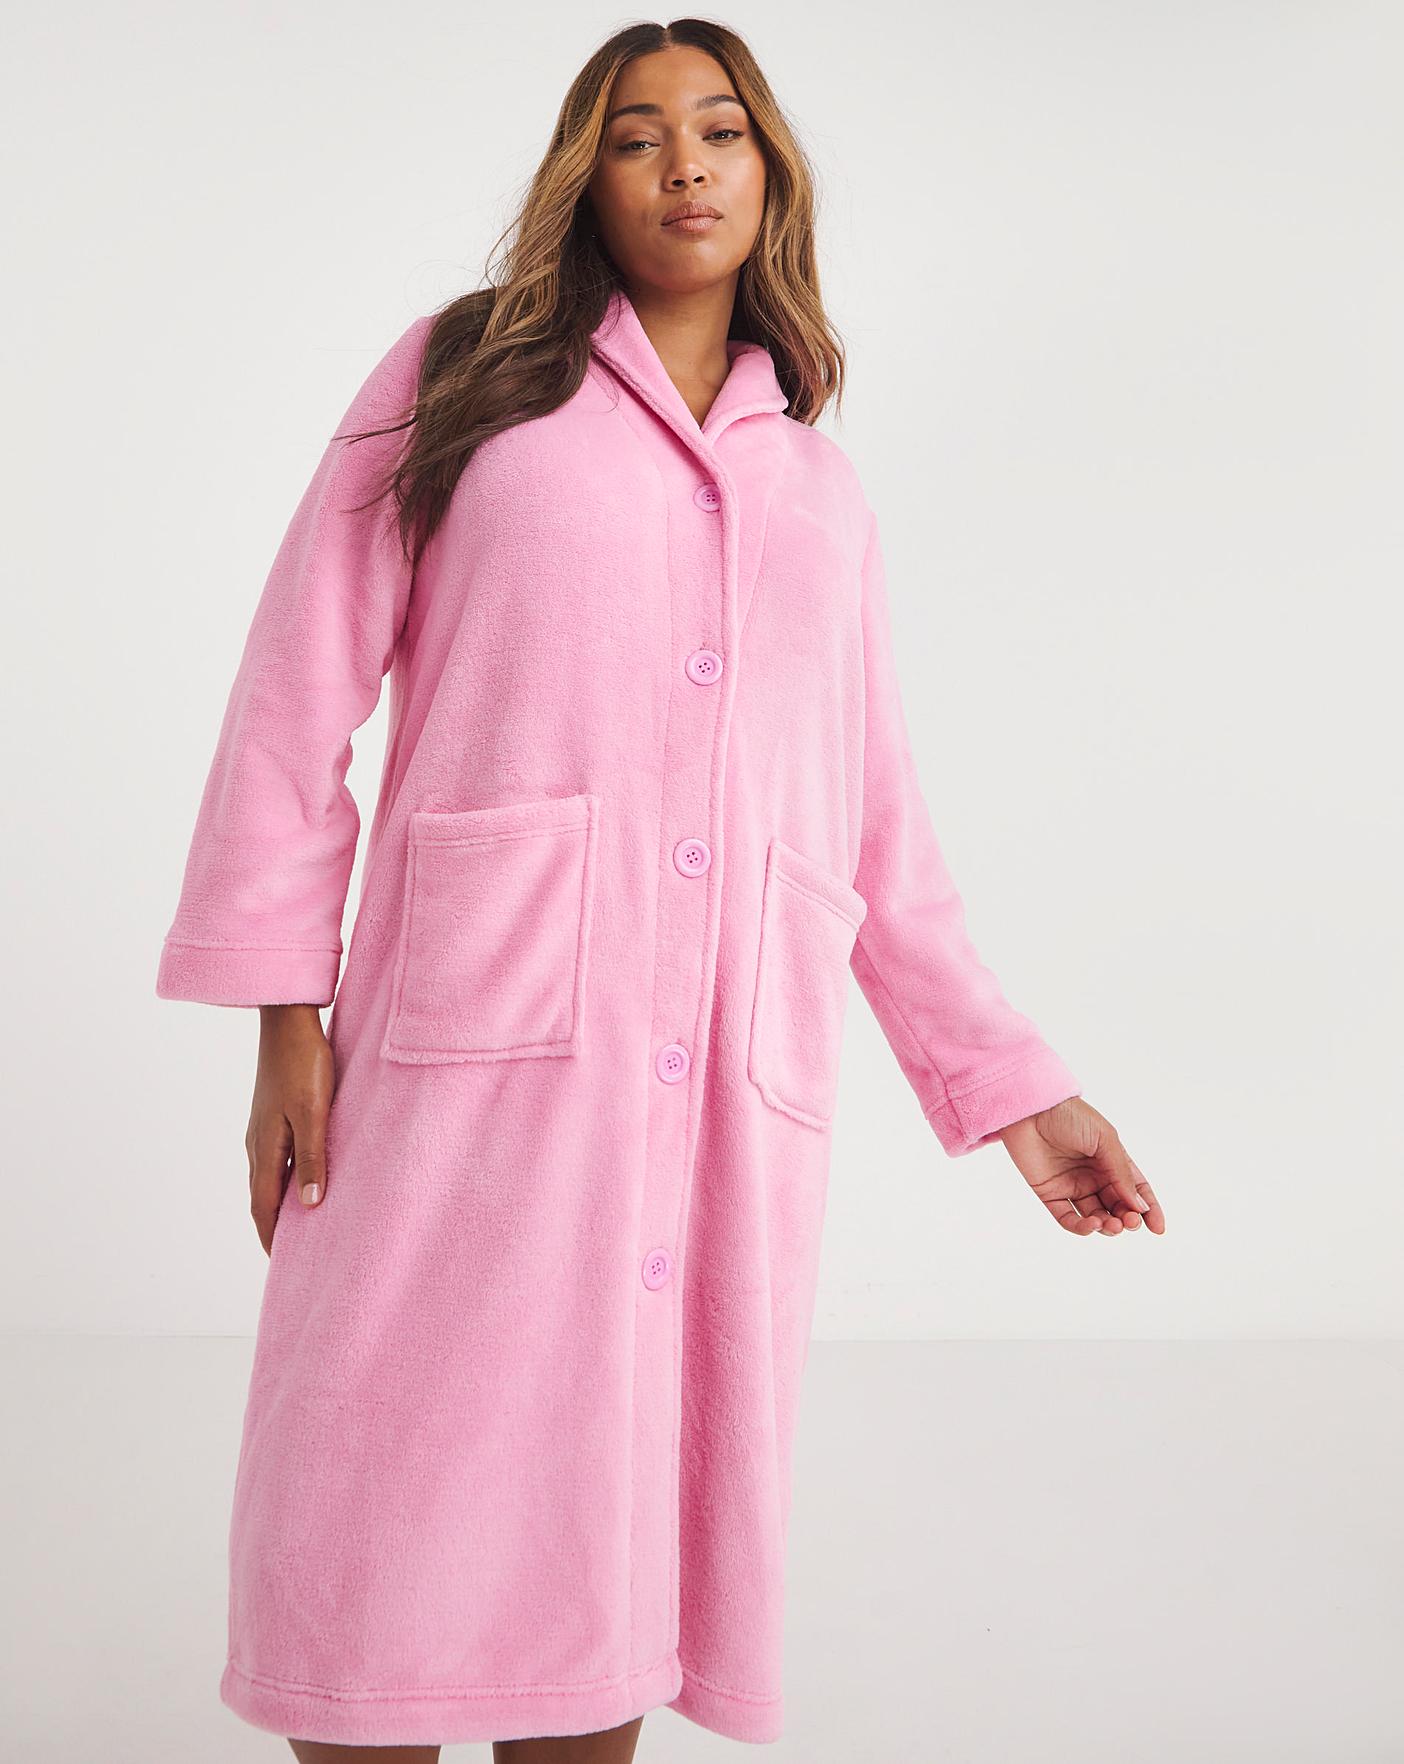 Ladies Christmas Oodie Oversized Fleece Lined Blanket Hoodie Dressing Gown  SALE! | eBay